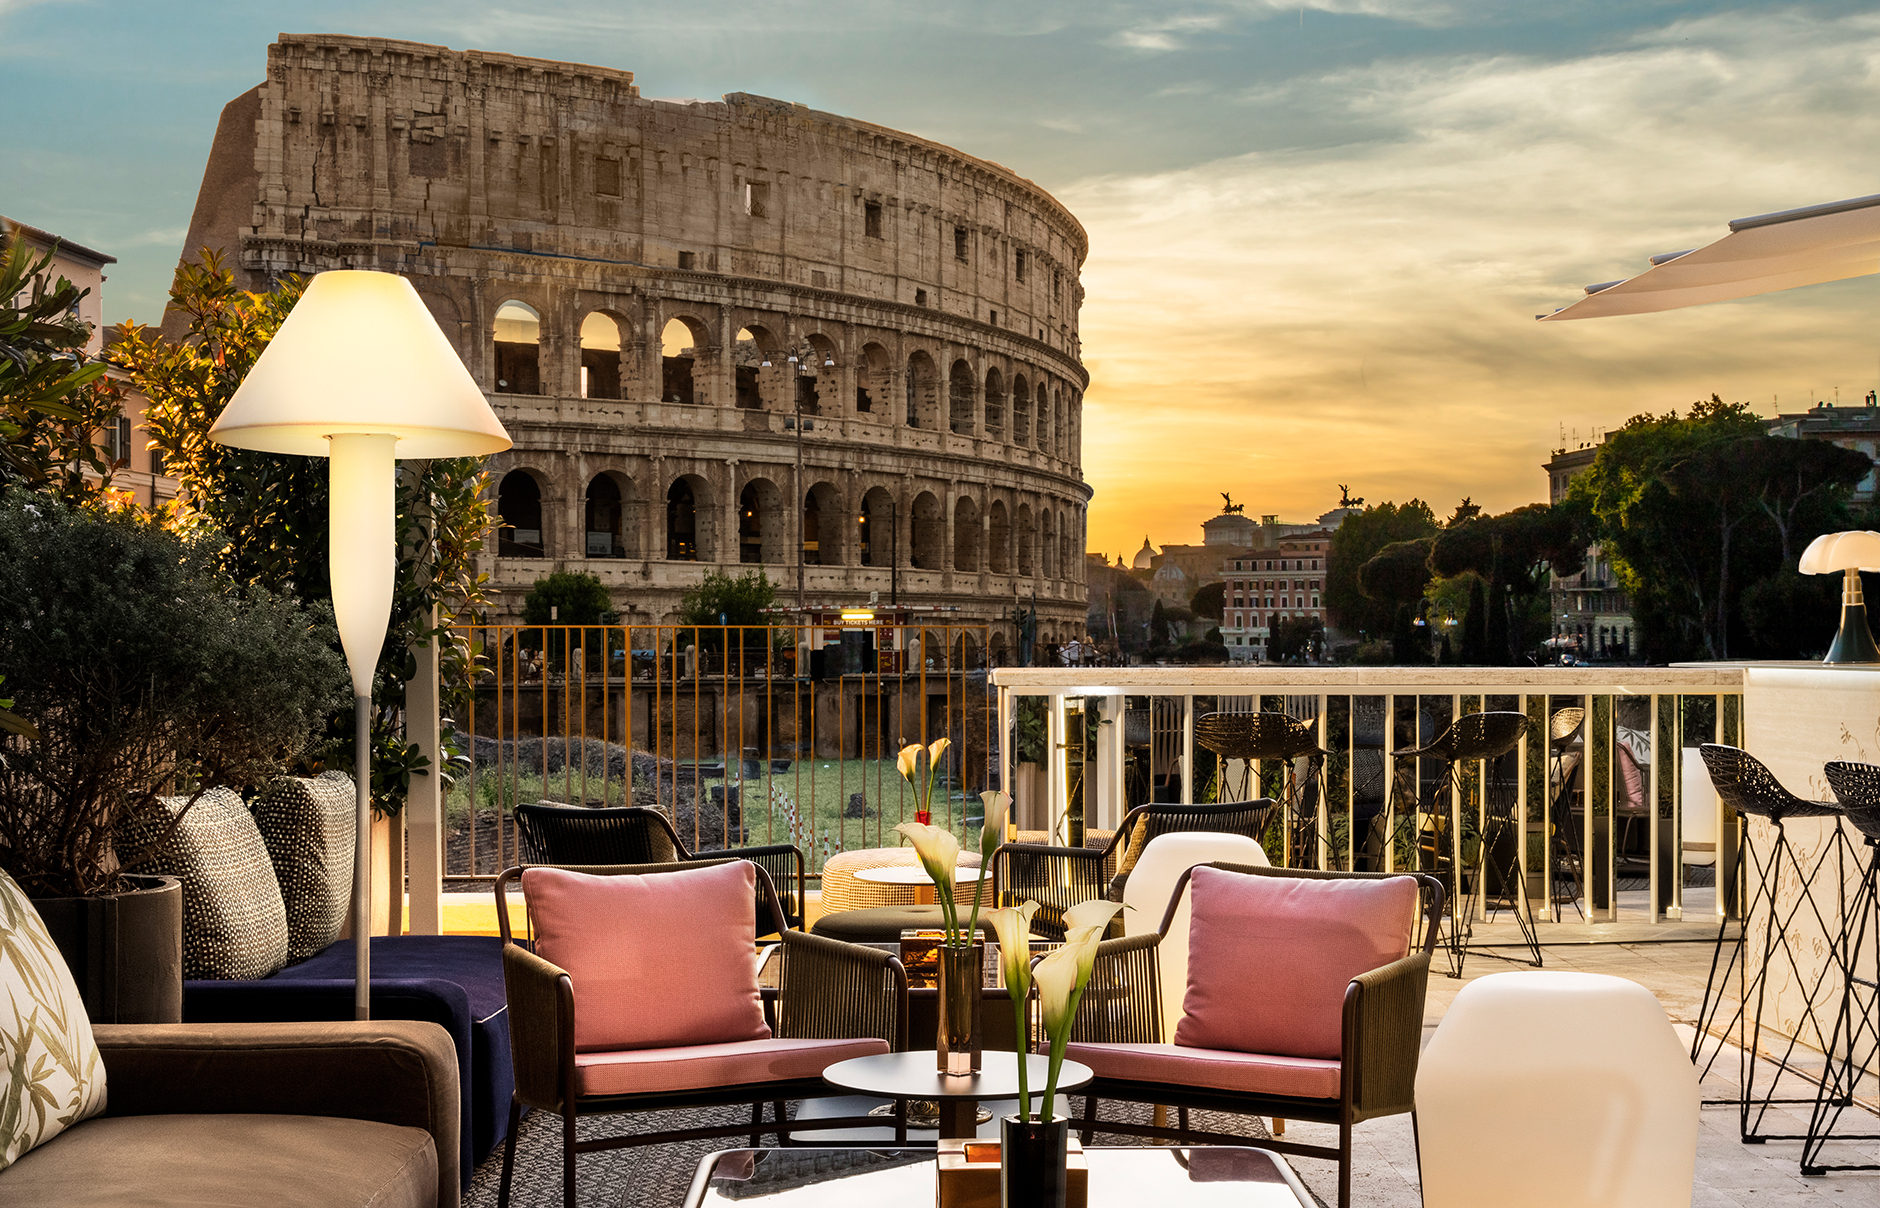 ZUMA ROME - Centro - Menu, Prices & Restaurant Reviews - Tripadvisor